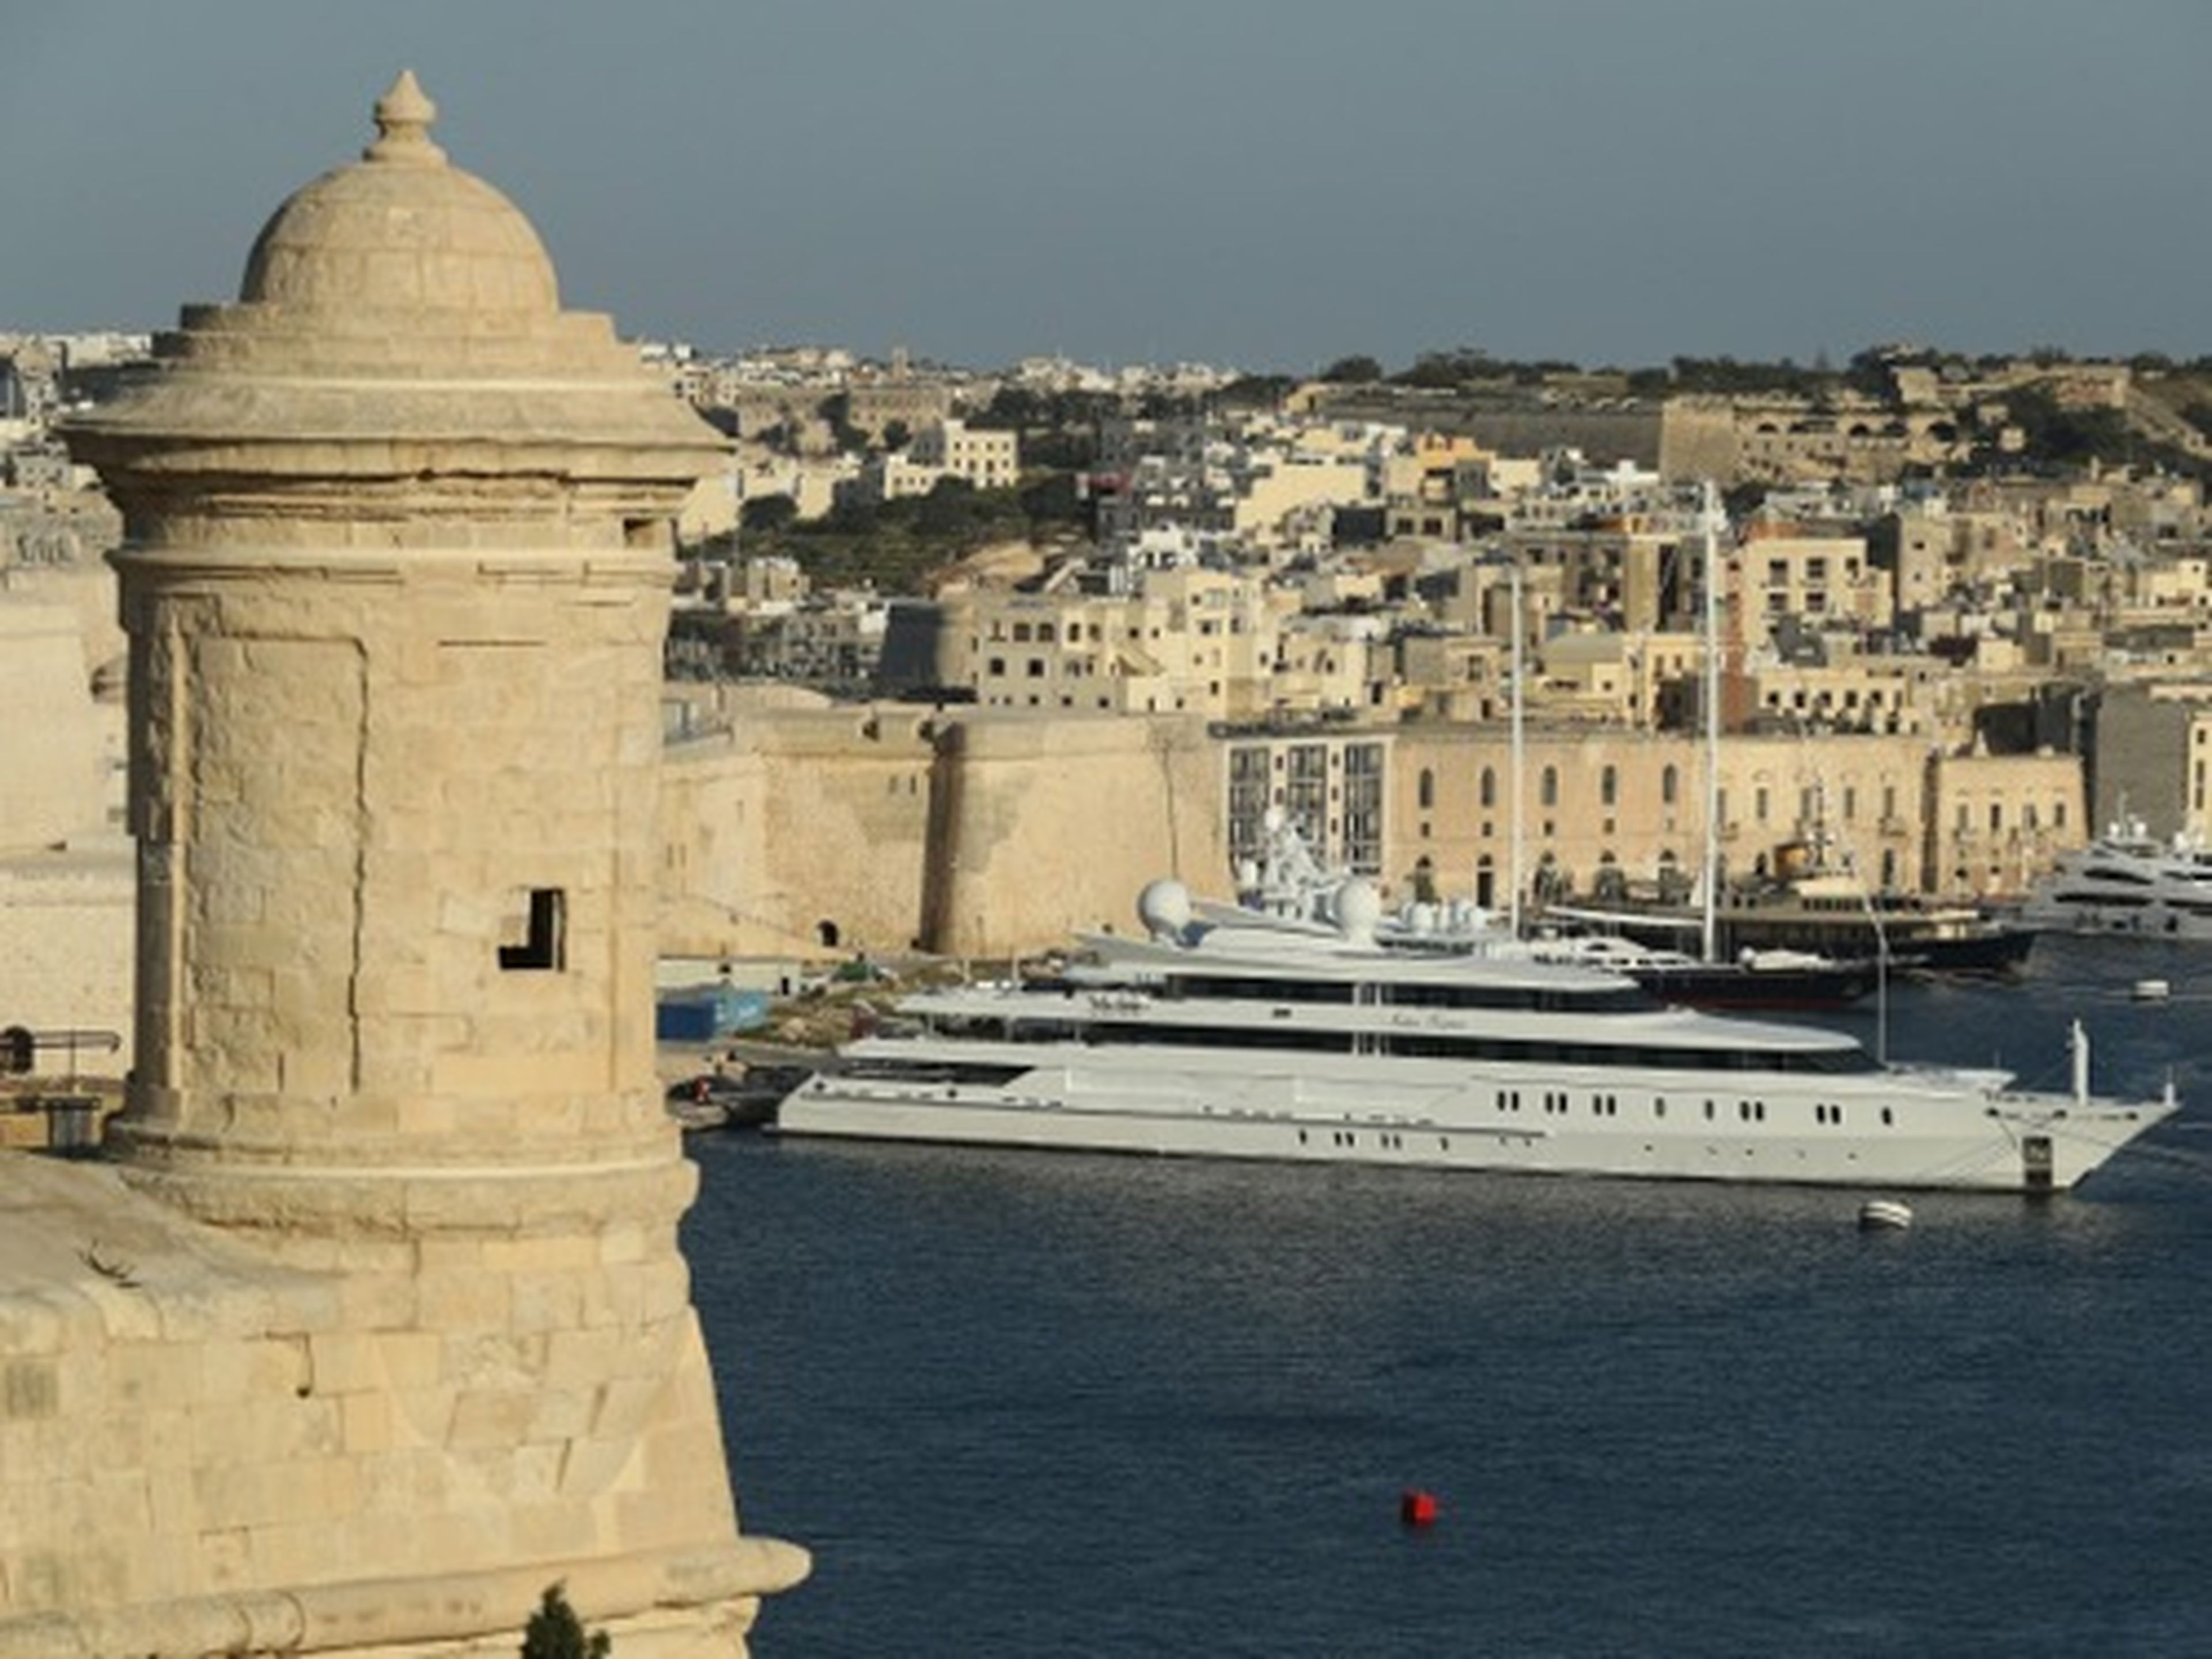 Un superyate, the Indian Empress, propiedad de Vijay Mallya, atracado en el puerto de La Valletta el 29 de marzo de 2017.